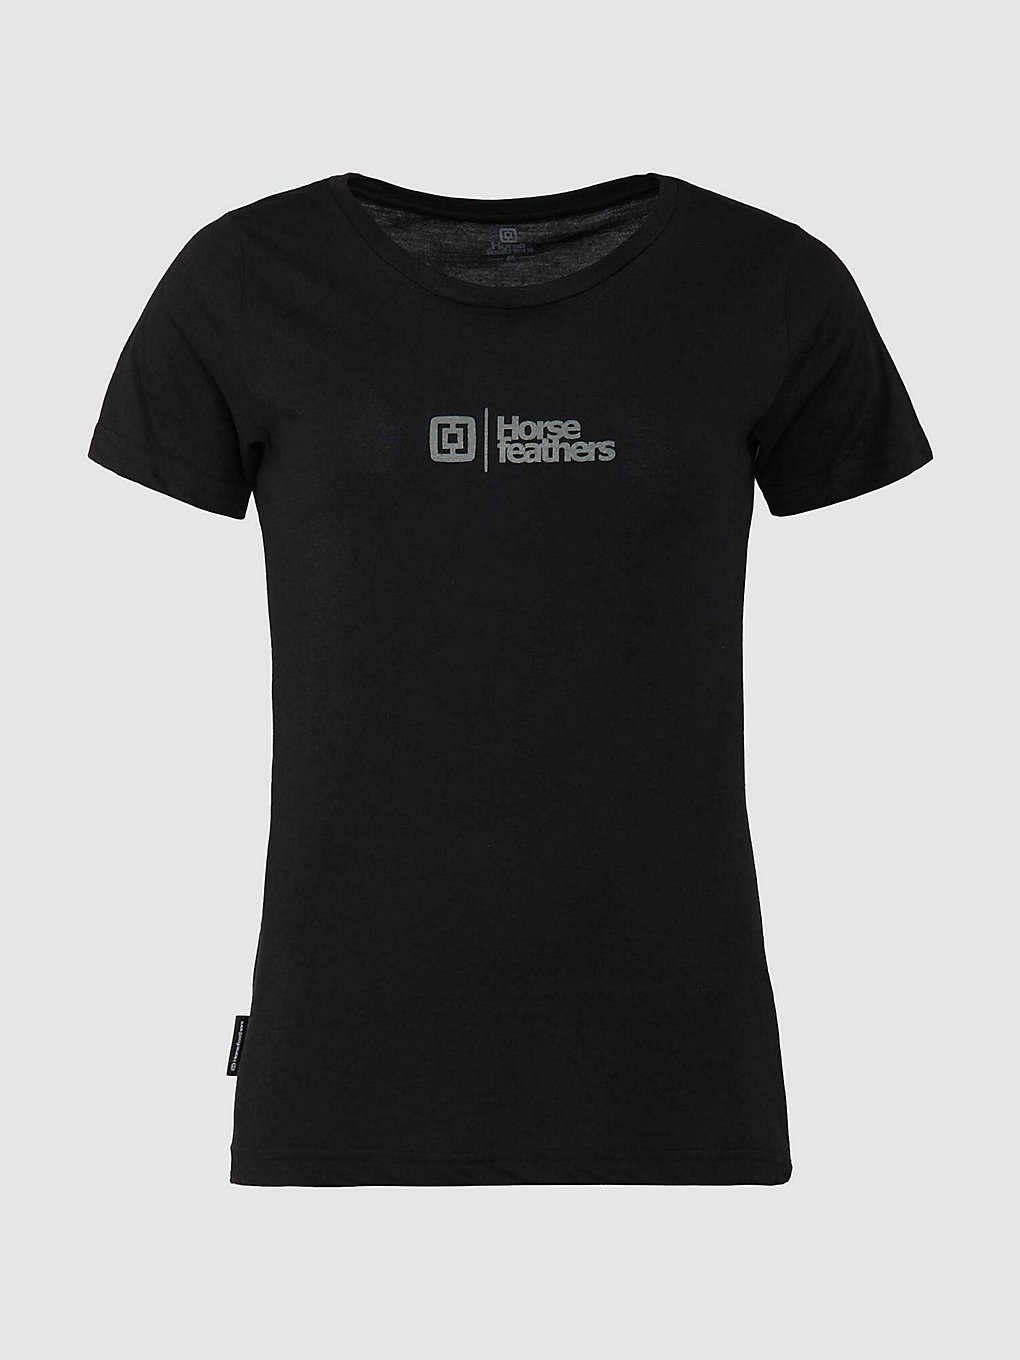 Horsefeathers Leila T-Shirt black kaufen